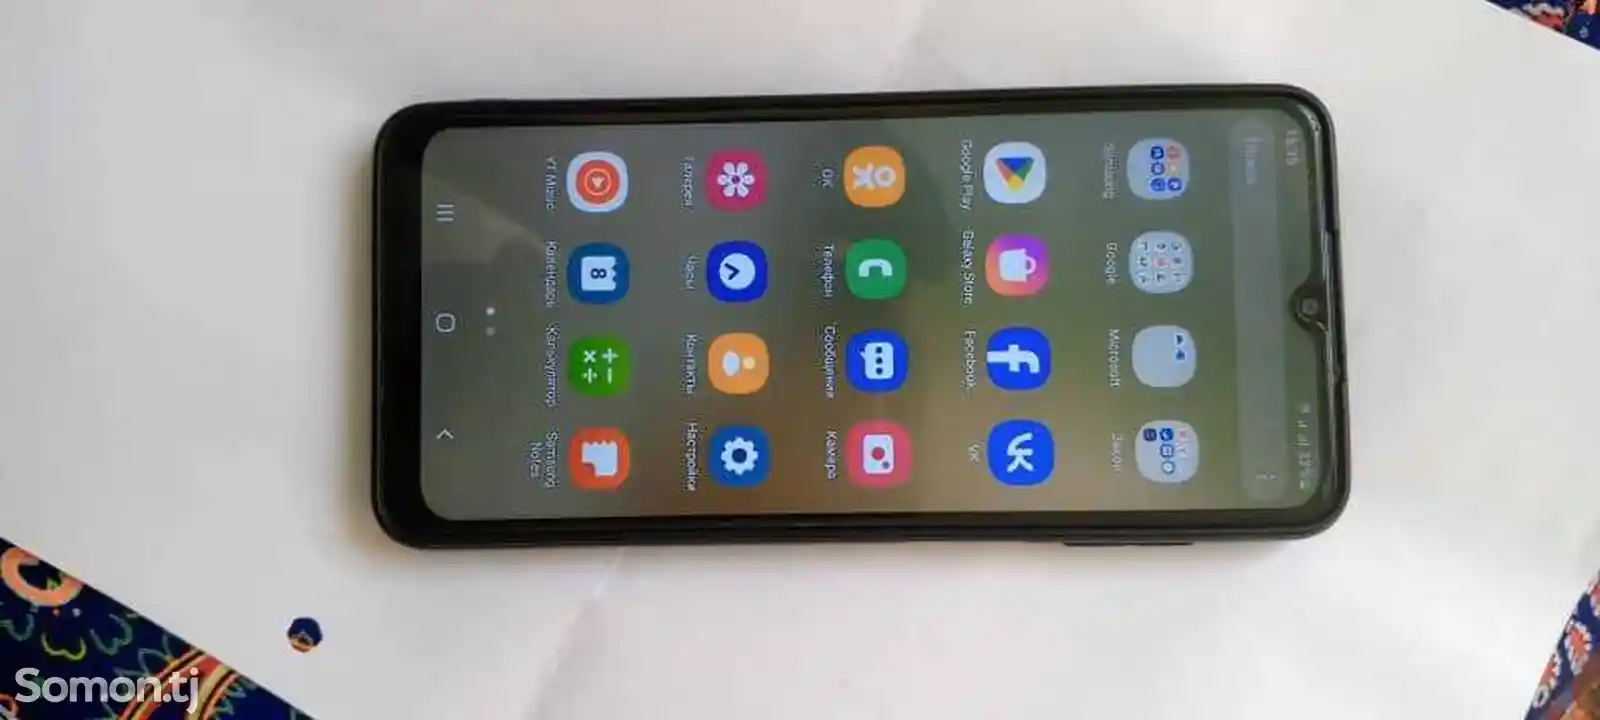 Samsung Galaxy A12-2